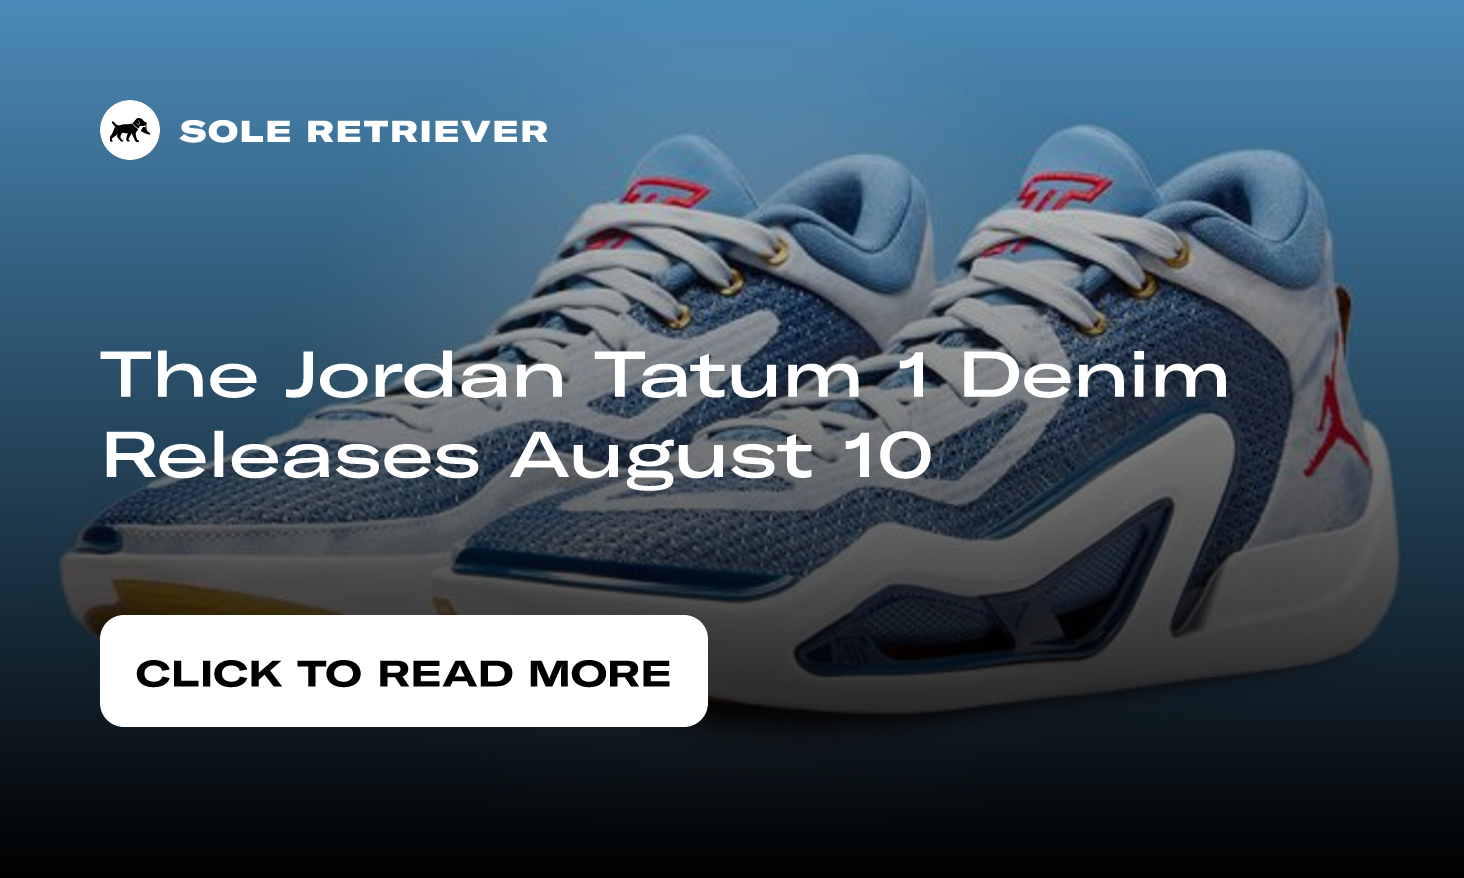 Tatum 1 Denim Basketball Shoes